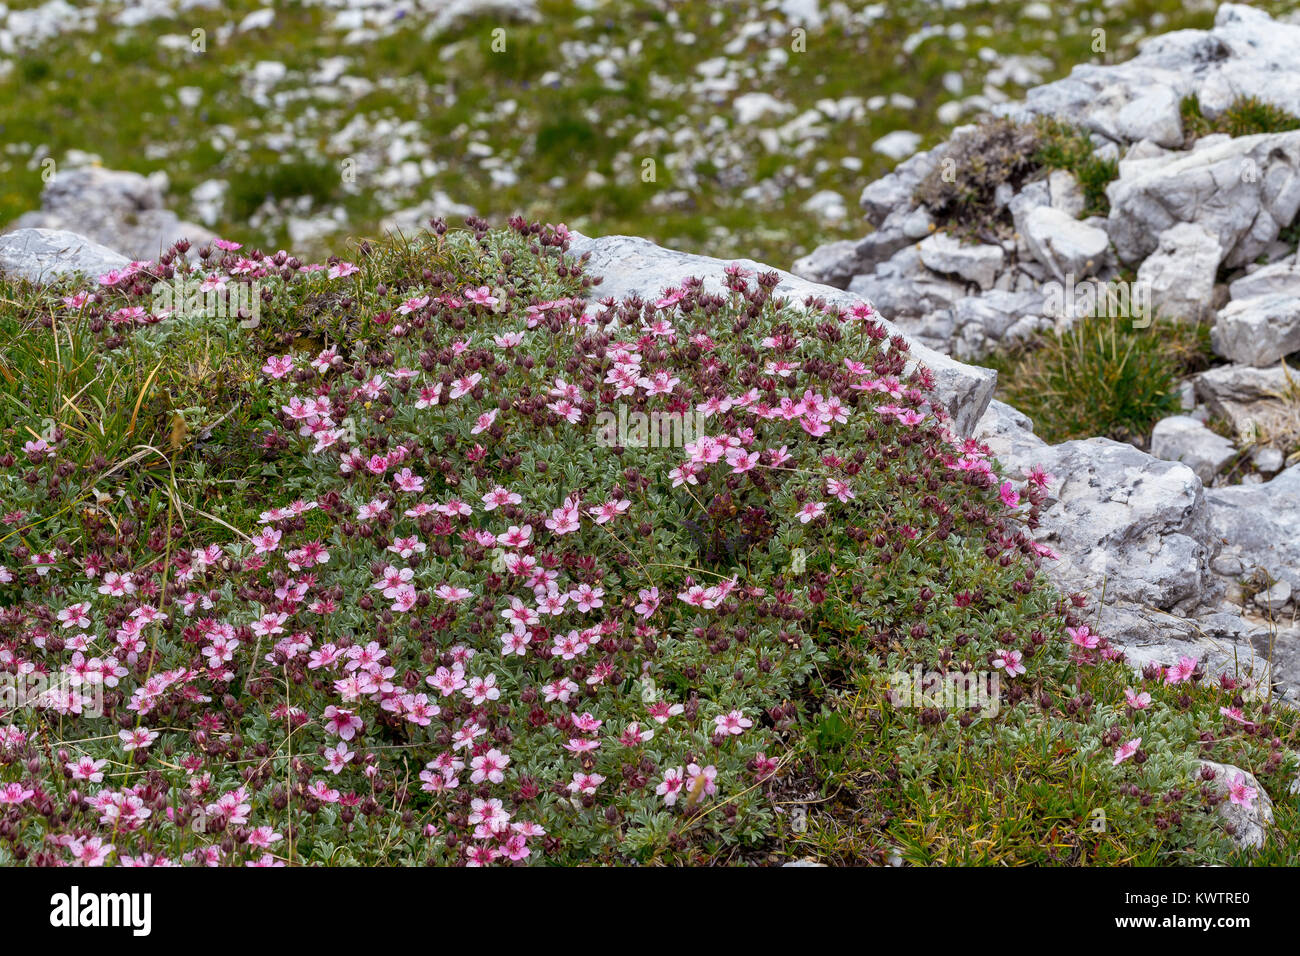 Potentilla nitida. Cinquefoglia delle Dolomiti. Alpine flowers in the Dolomites. Italian Alps. Europe. Stock Photo